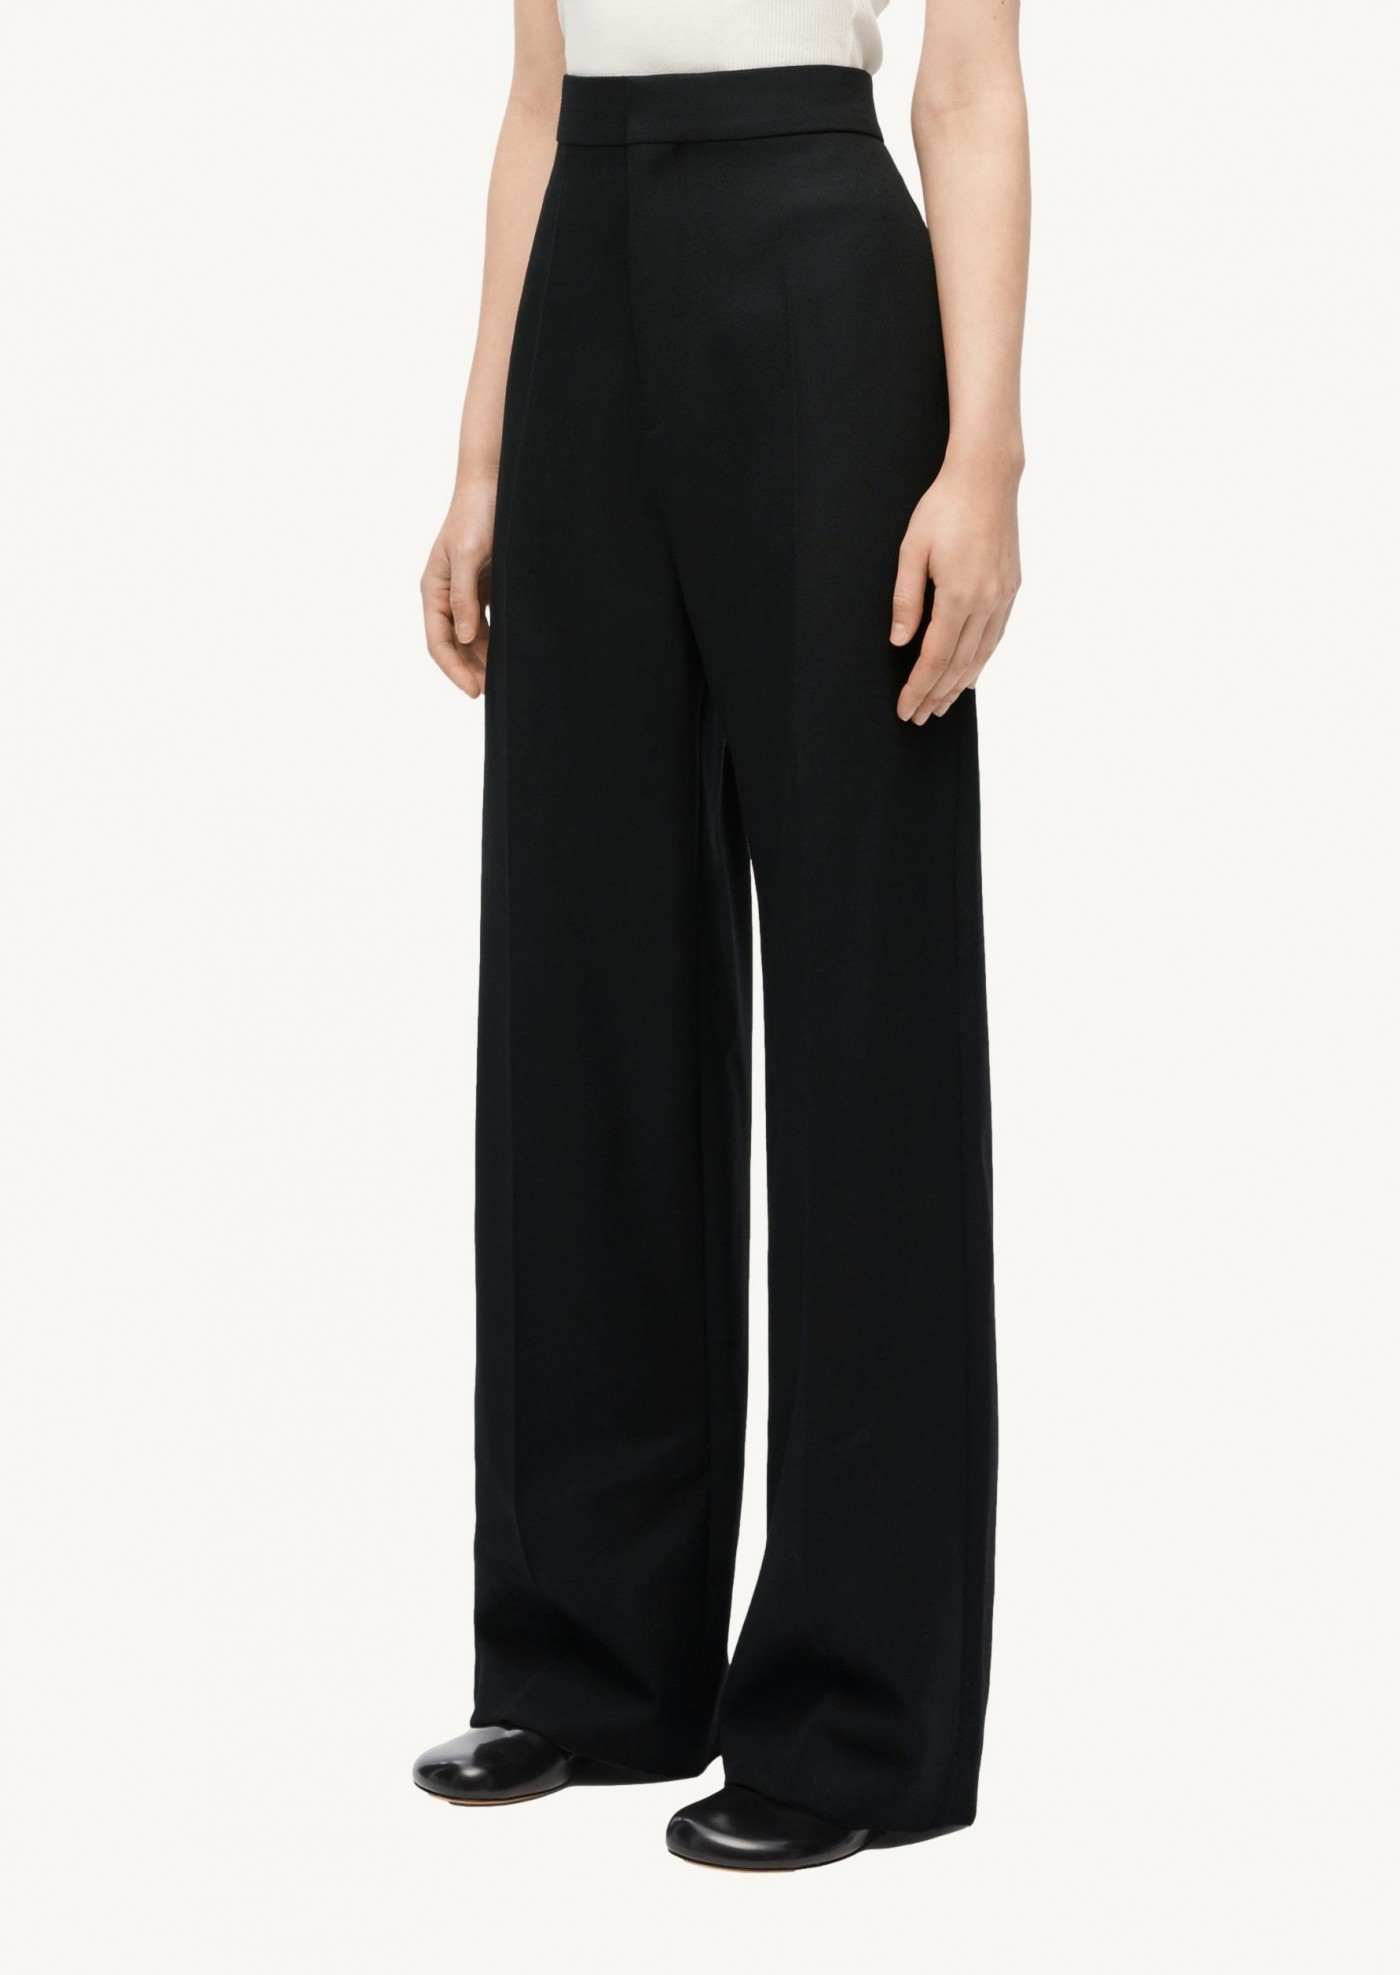 https://www.departementfeminin.com/52460-large_default/loewe-high-waisted-trousers-in-wool-black.jpg